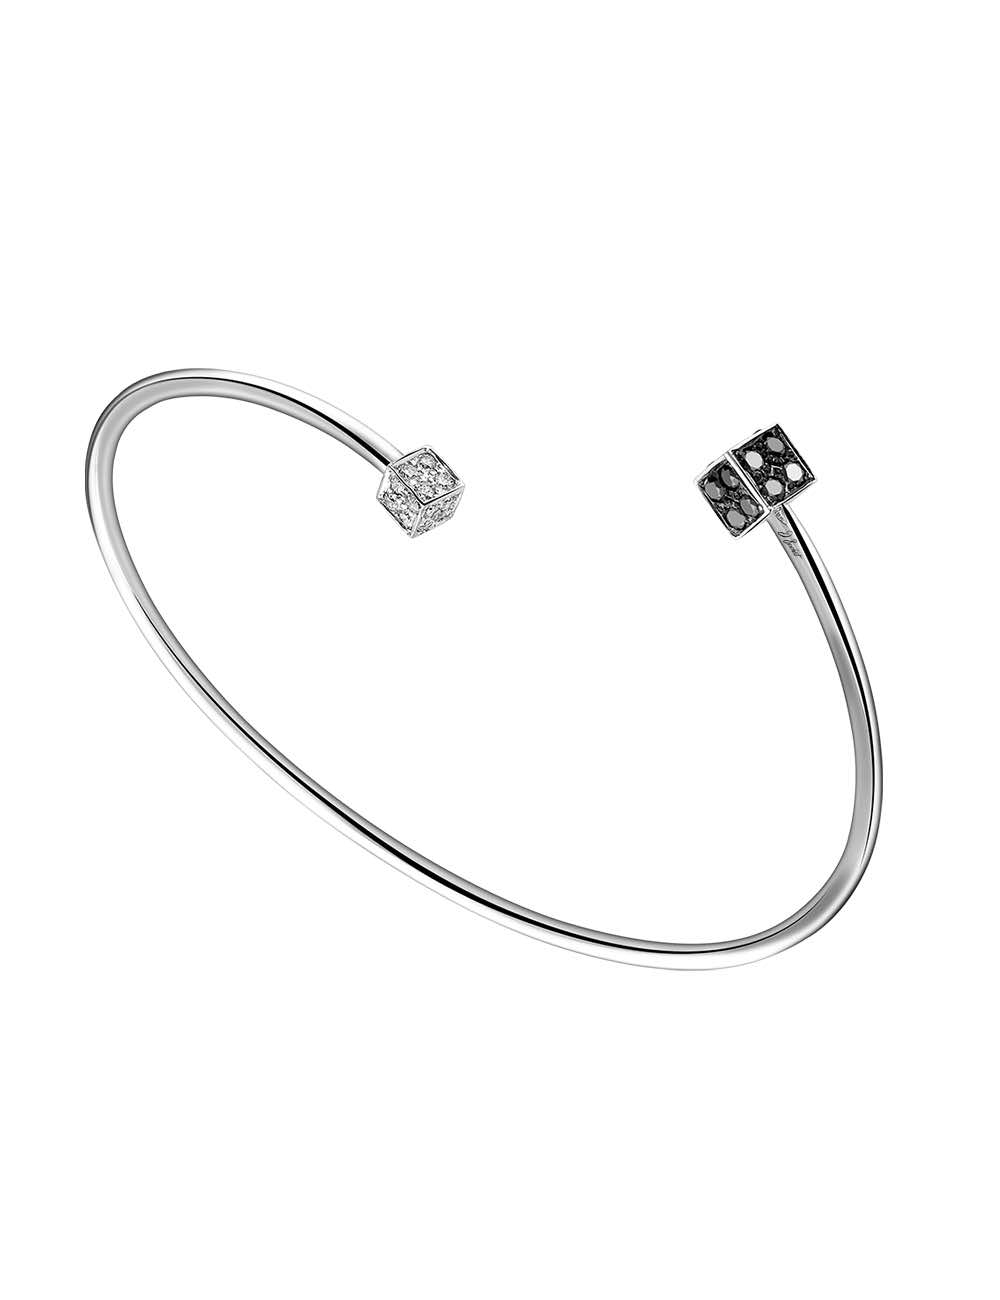 Bracelet jonc Cube pour femme : design unique avec diamants contrastés, apportant sophistication à chaque tenue.